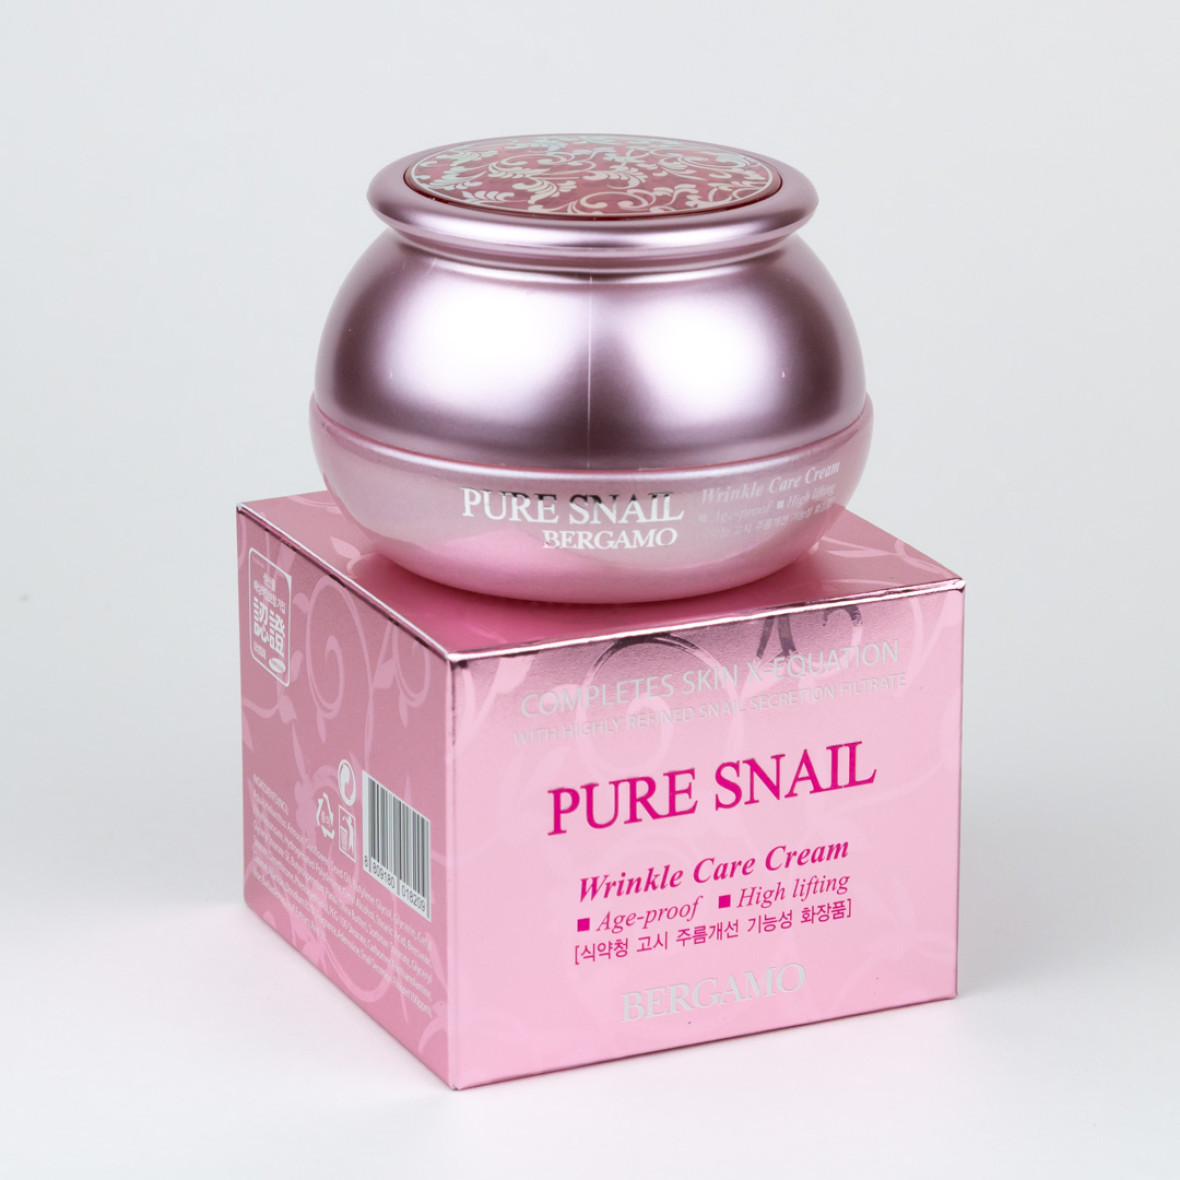 Антивозрастной крем с улиточным муцином Bergamo Pure Snail Wrinkle Care Cream,50 g